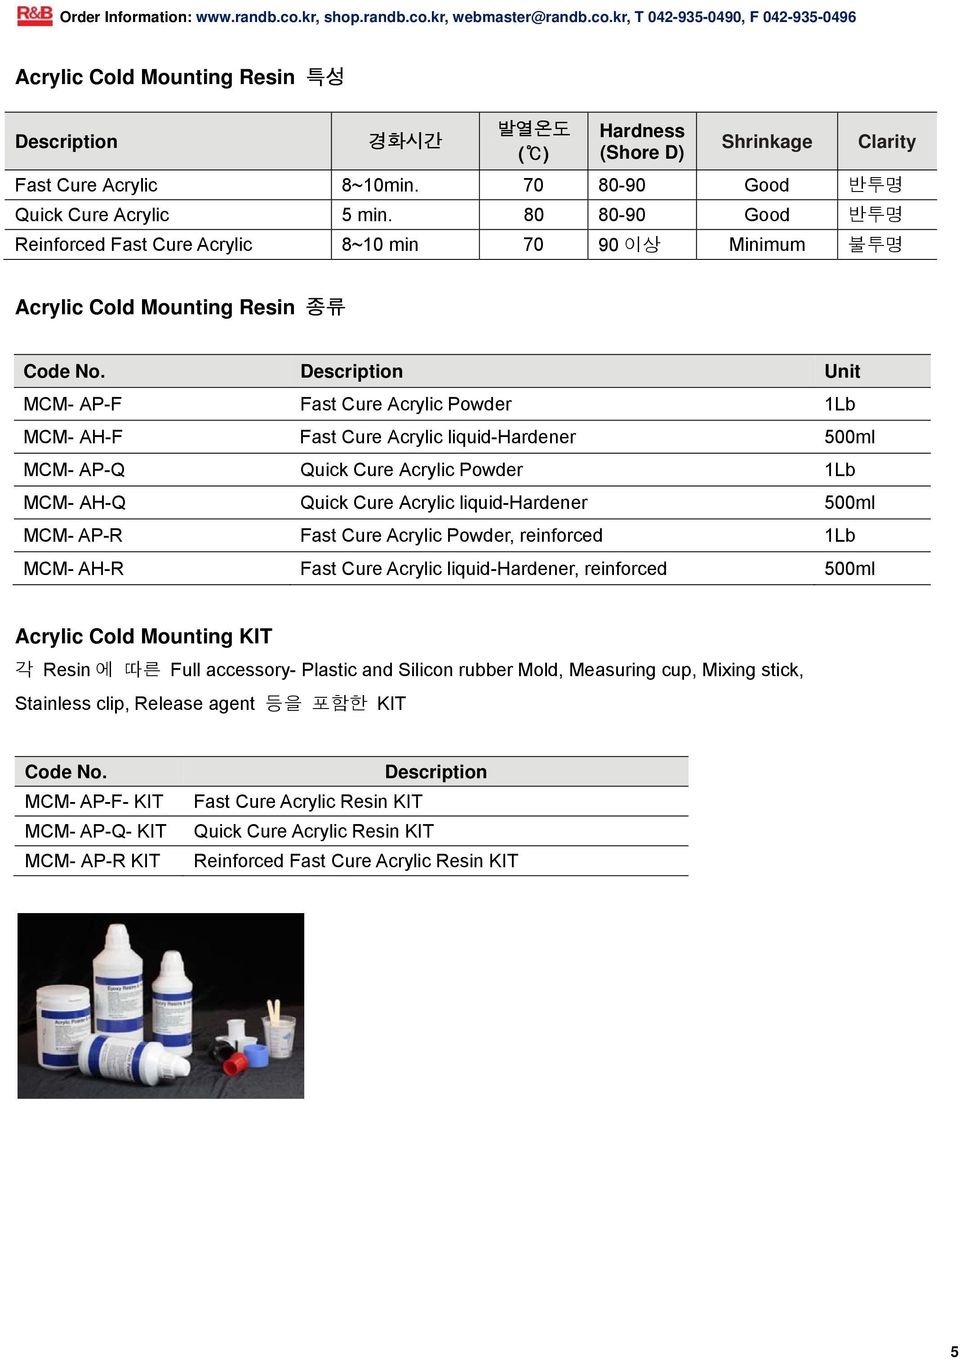 Description Unit MCM- AP-F Fast Cure Acrylic Powder 1Lb MCM- AH-F Fast Cure Acrylic liquid-hardener 500ml MCM- AP-Q Quick Cure Acrylic Powder 1Lb MCM- AH-Q Quick Cure Acrylic liquid-hardener 500ml